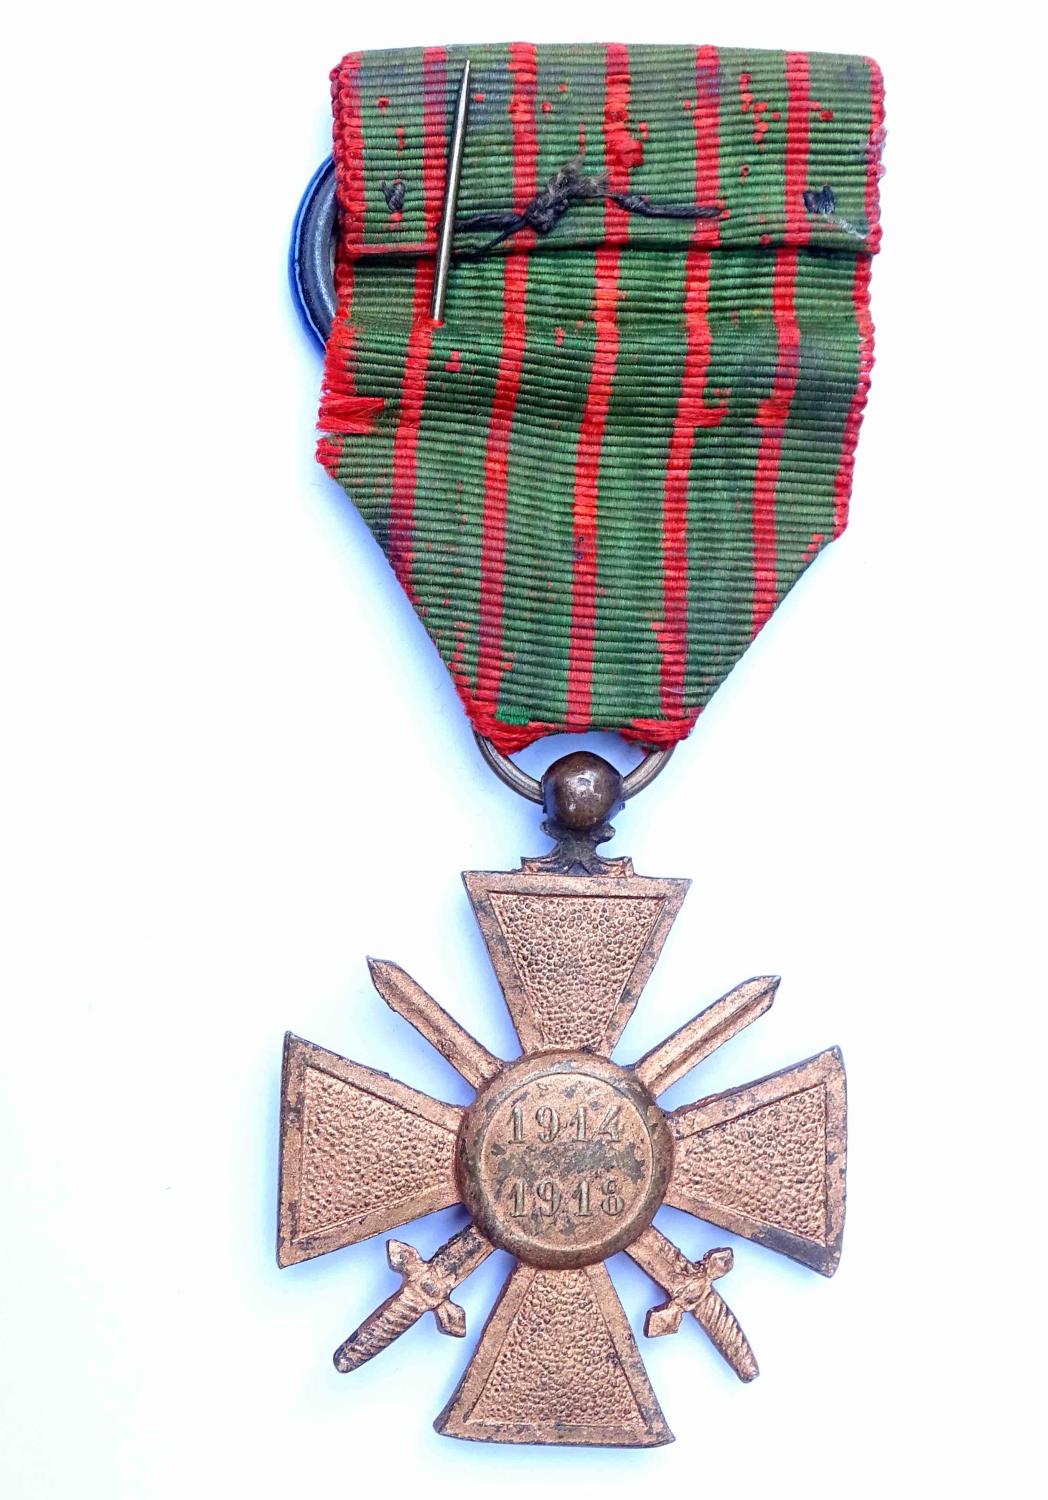 M&eacute;daille Croix de guerre 1914-1918 Sacr&eacute; coeur, une citation